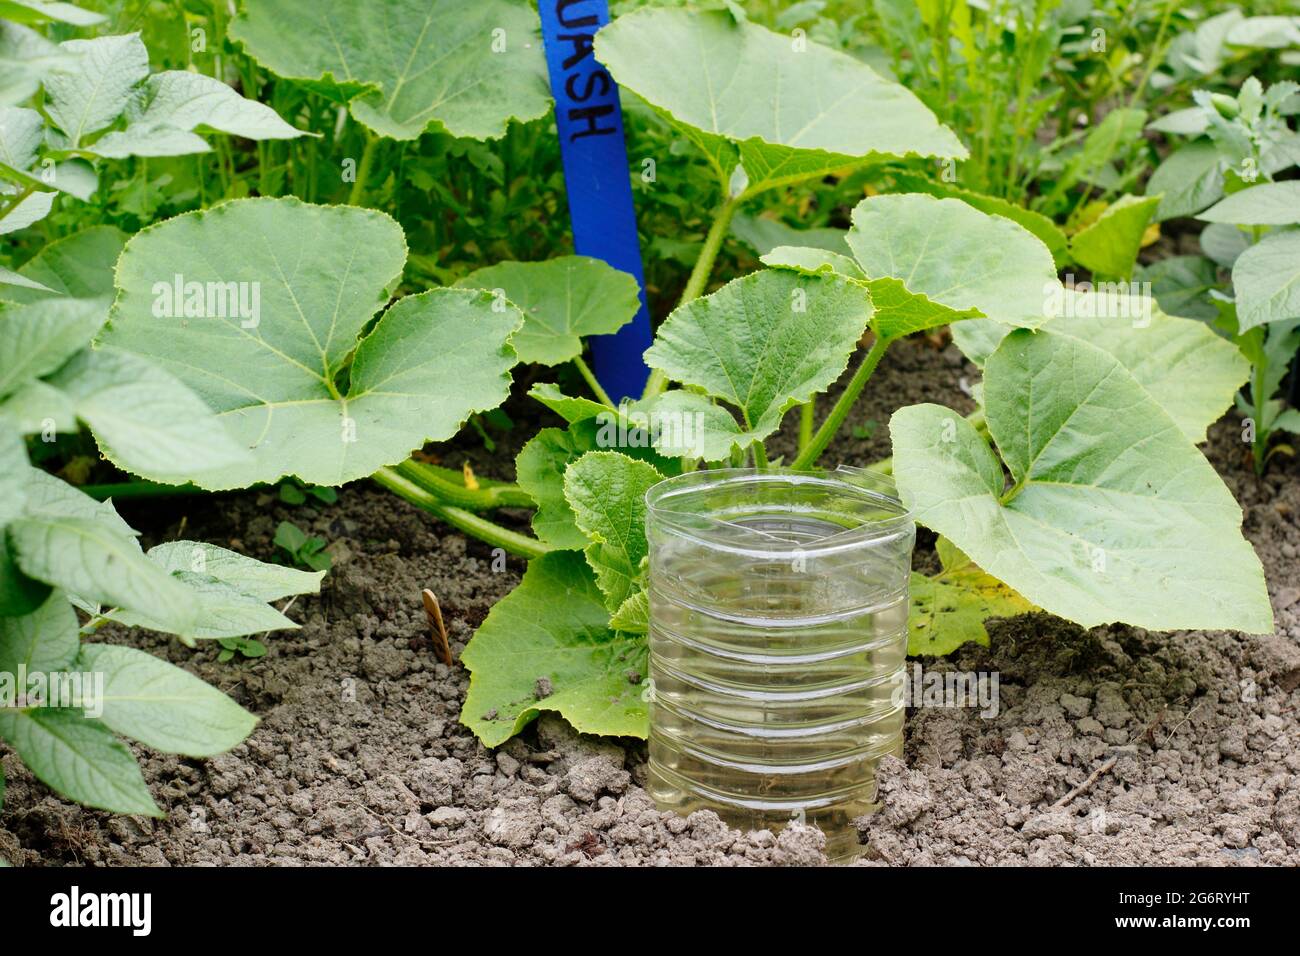 Bouteille en plastique recyclé coupée et retournée pour arroser en profondeur une plante de courge - Cucurbita pepo ‘Crown Prince’. ROYAUME-UNI Banque D'Images